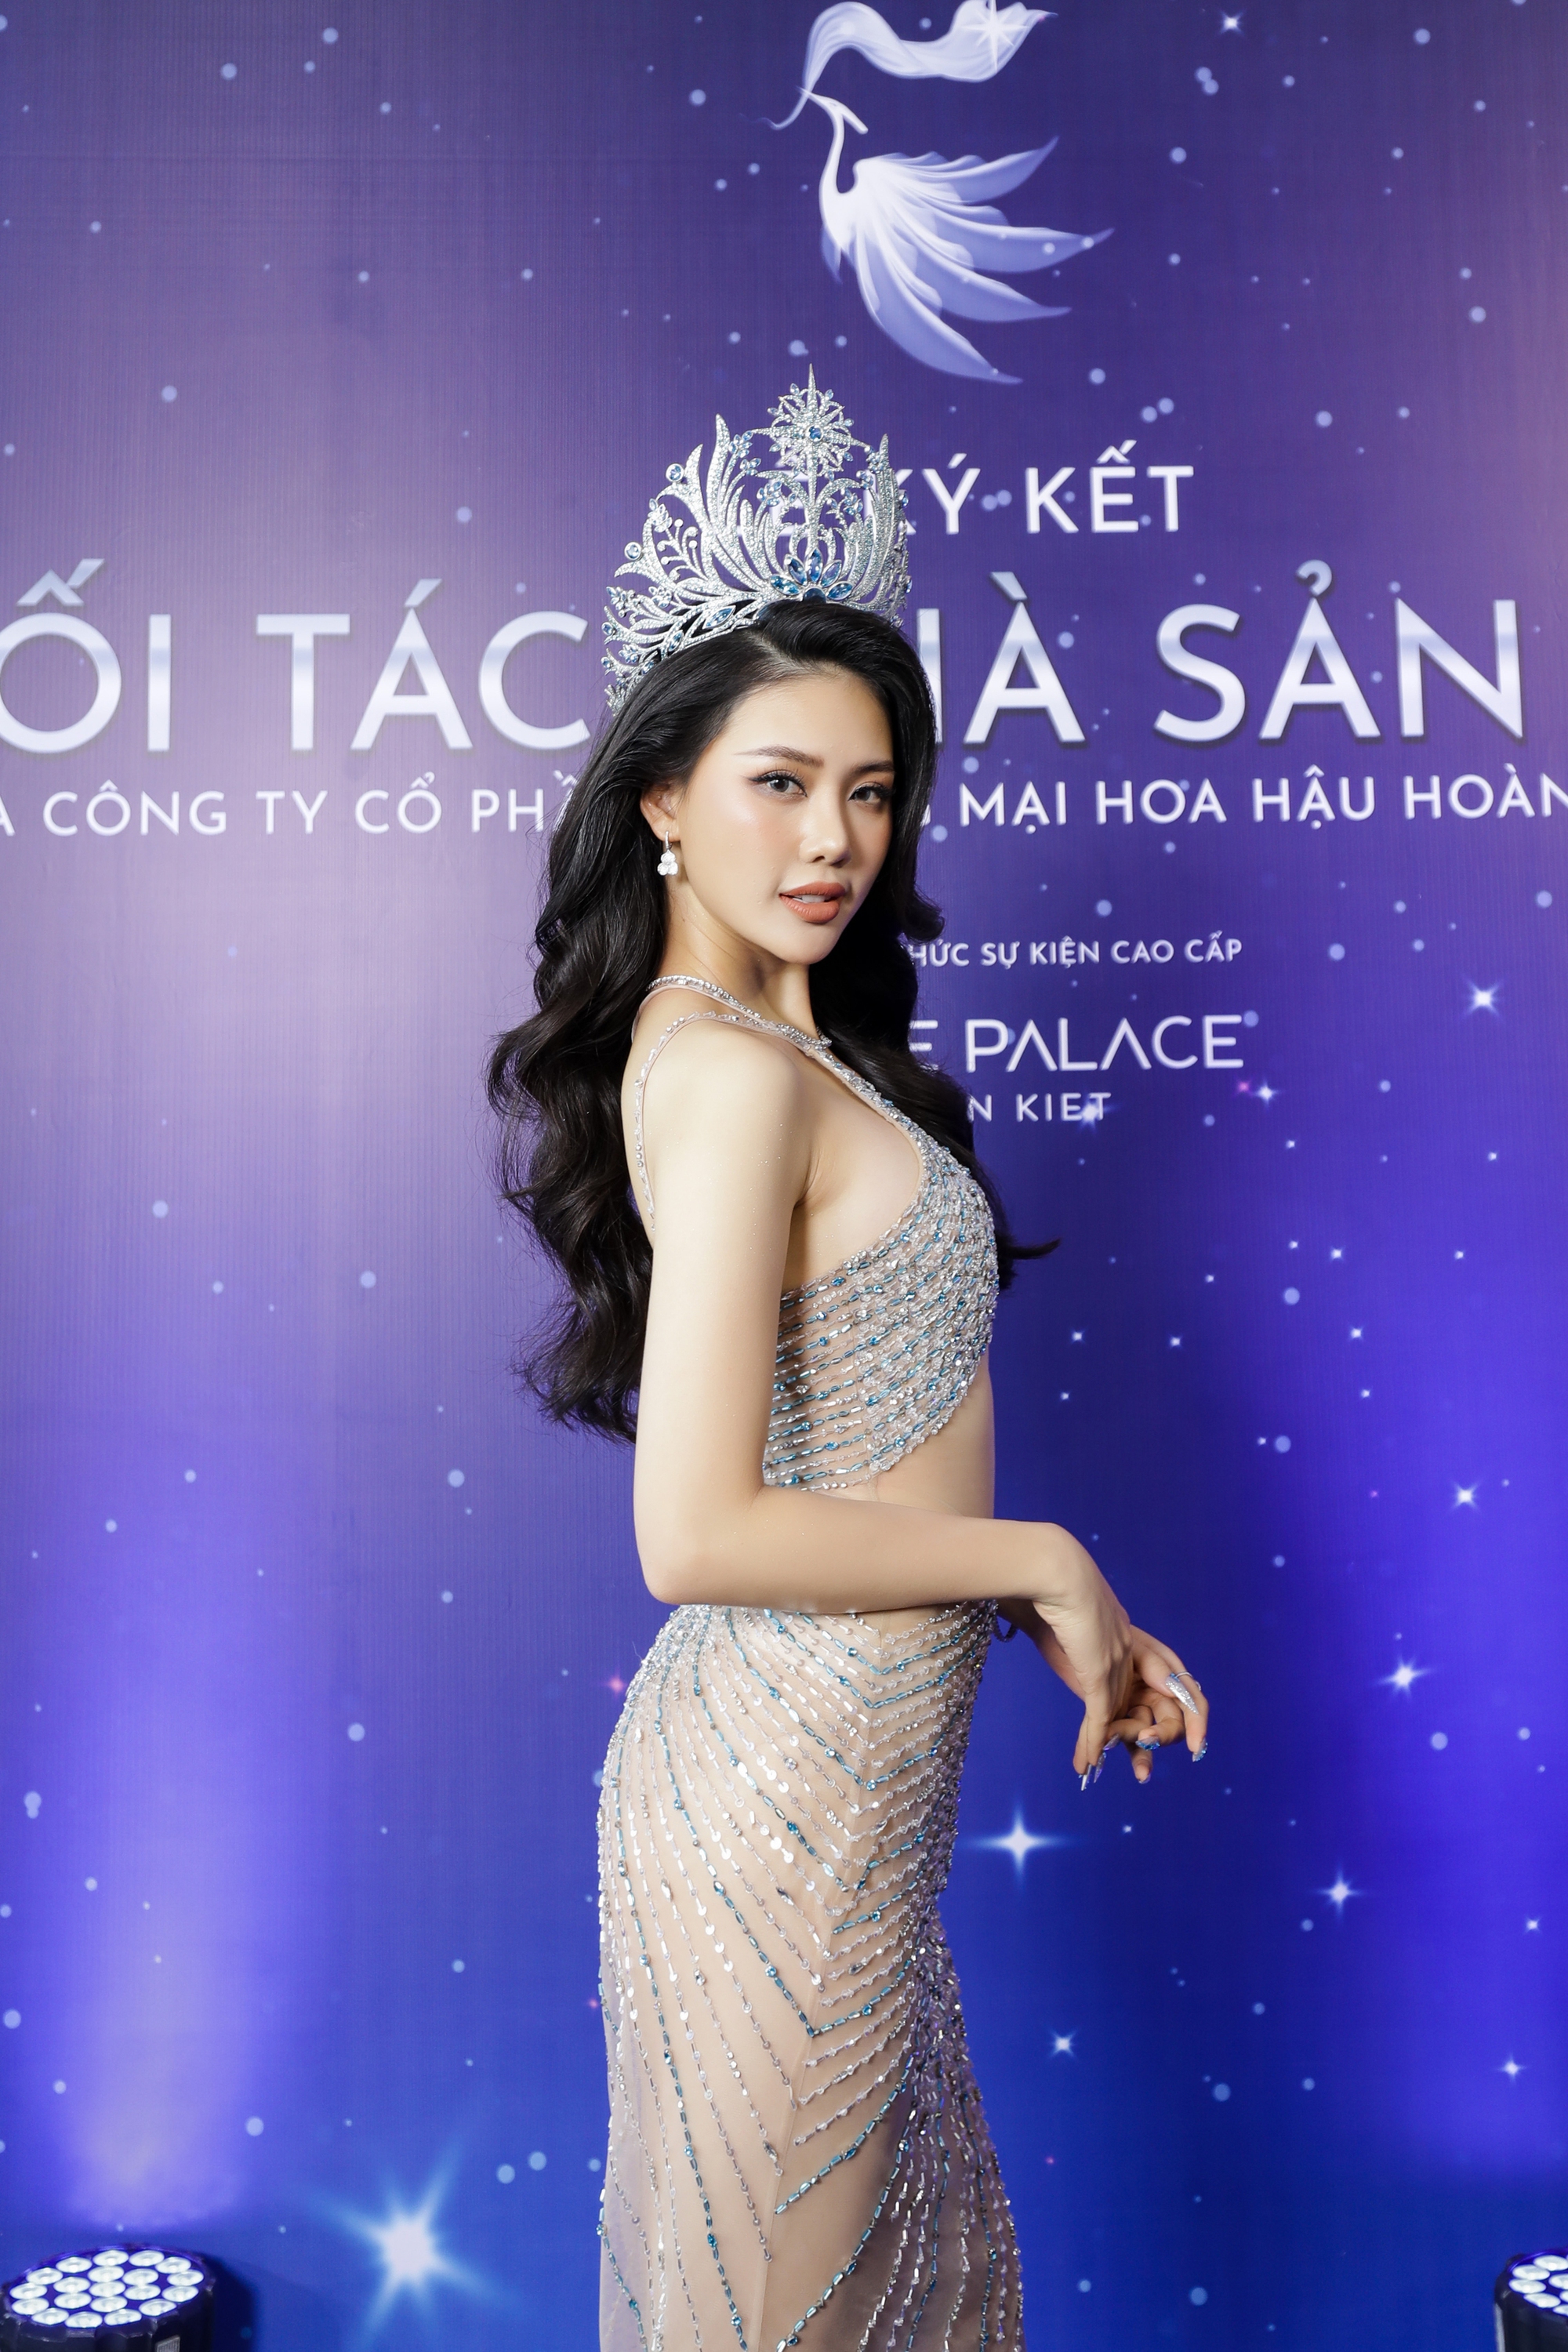 Hương Giang - Dược sĩ Tiến chính thức là NSX Miss Universe Vietnam, Lan Khuê rời ghế giám đốc điều hành- Ảnh 2.